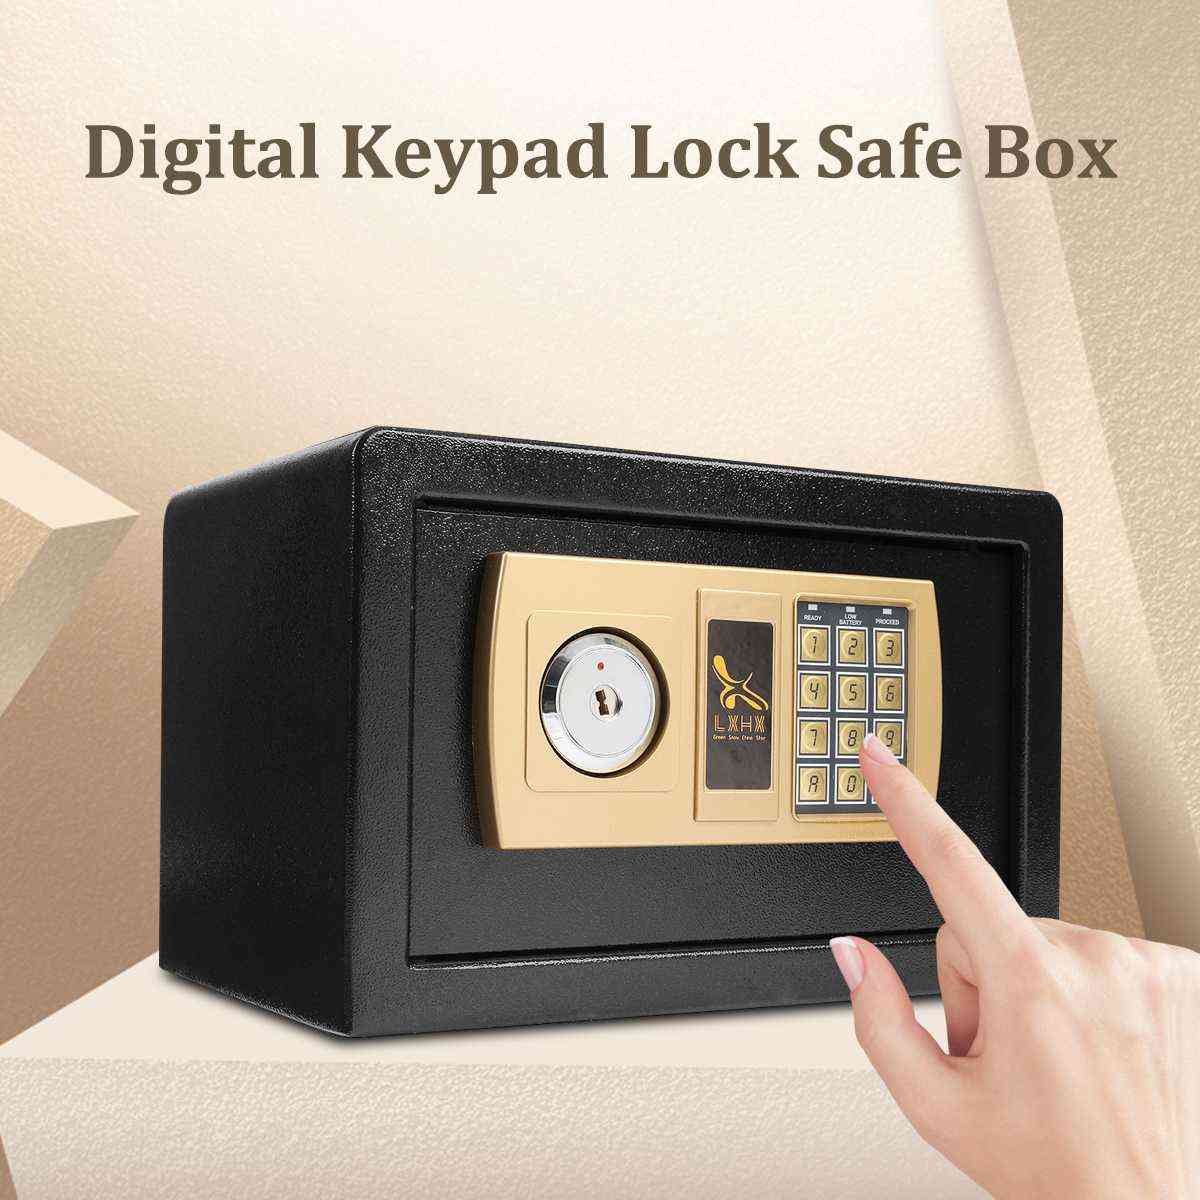 Digital sikker kasse brandsikker, ideel sikkerhedshemmelig elektronisk adgangskode